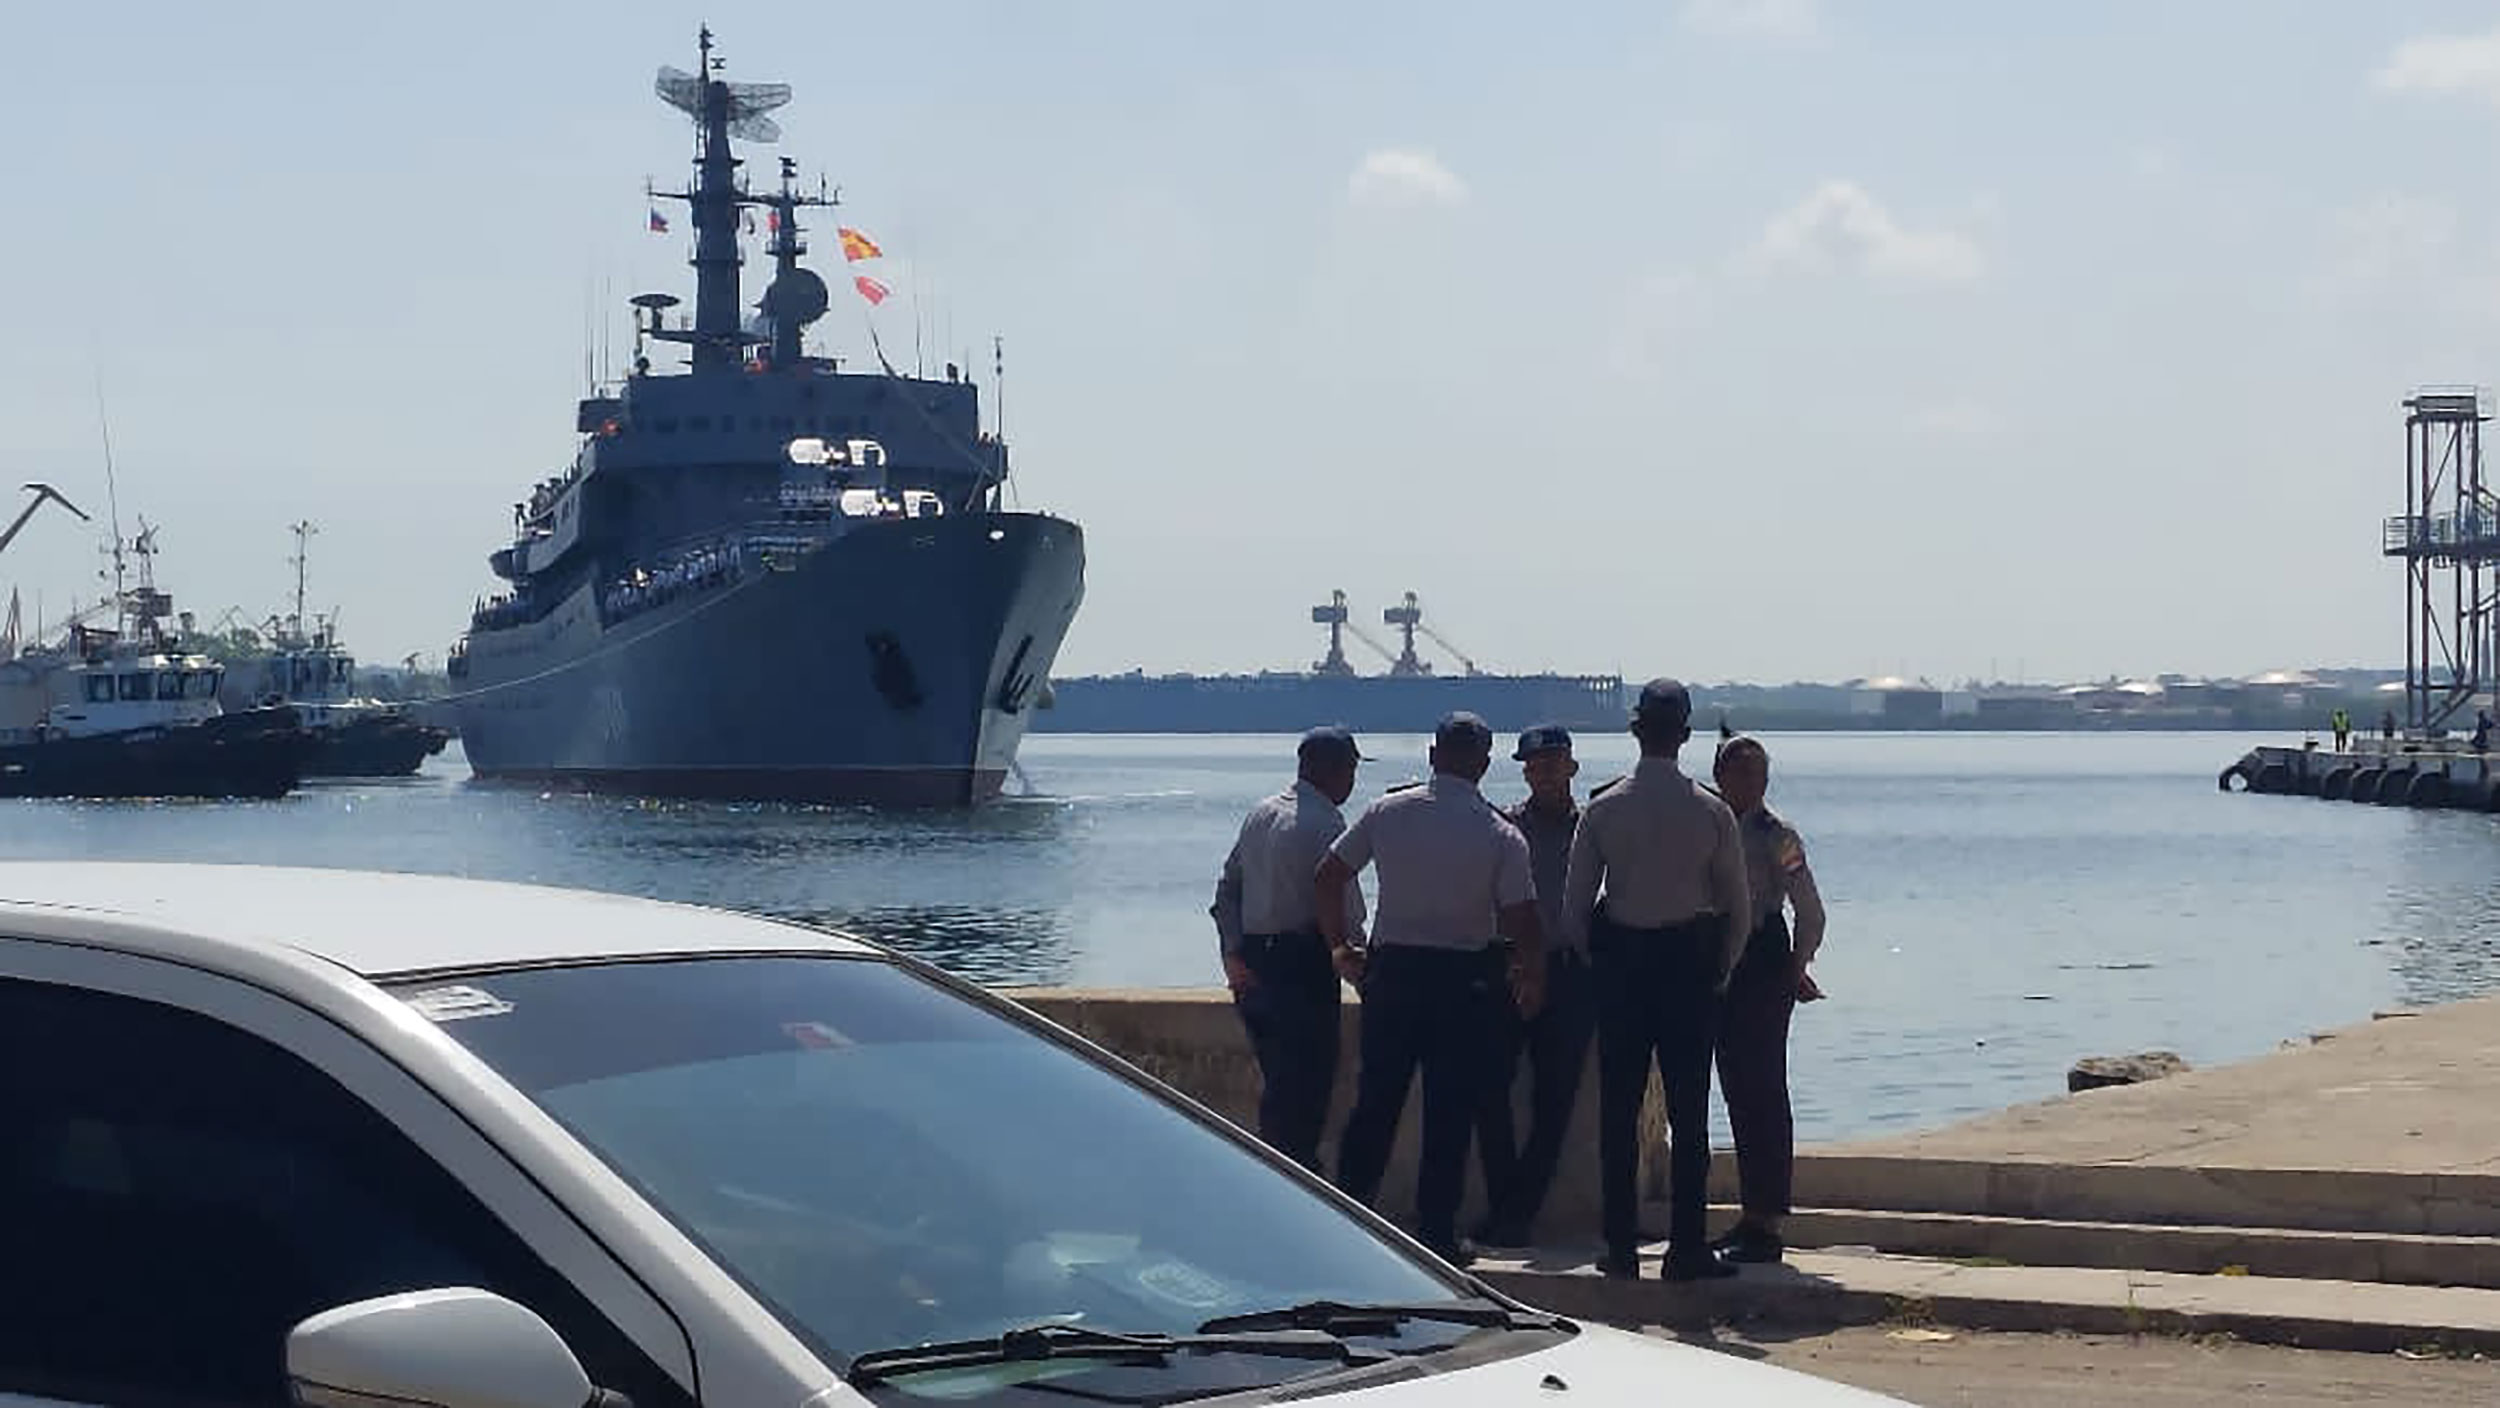 The Russian navy's training class ship Perekop is seen in Havana, Cuba on July 11, 2023.